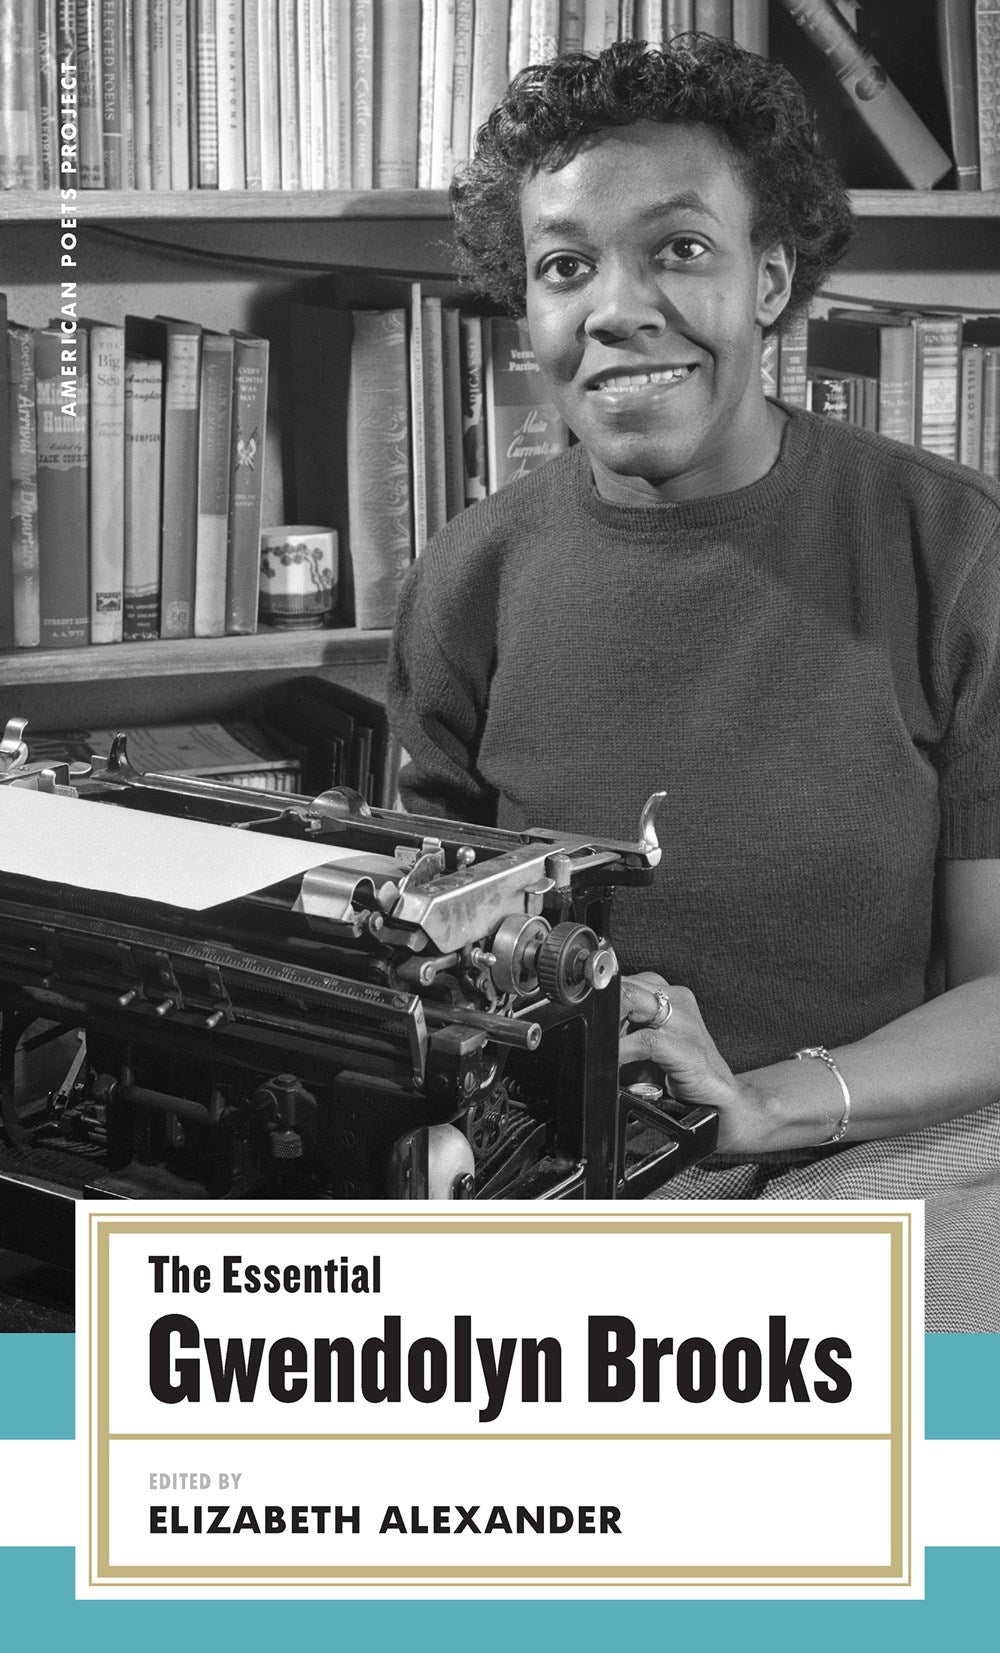 The Essential Gwendolyn Brooks edited by Elizabeth Alexander